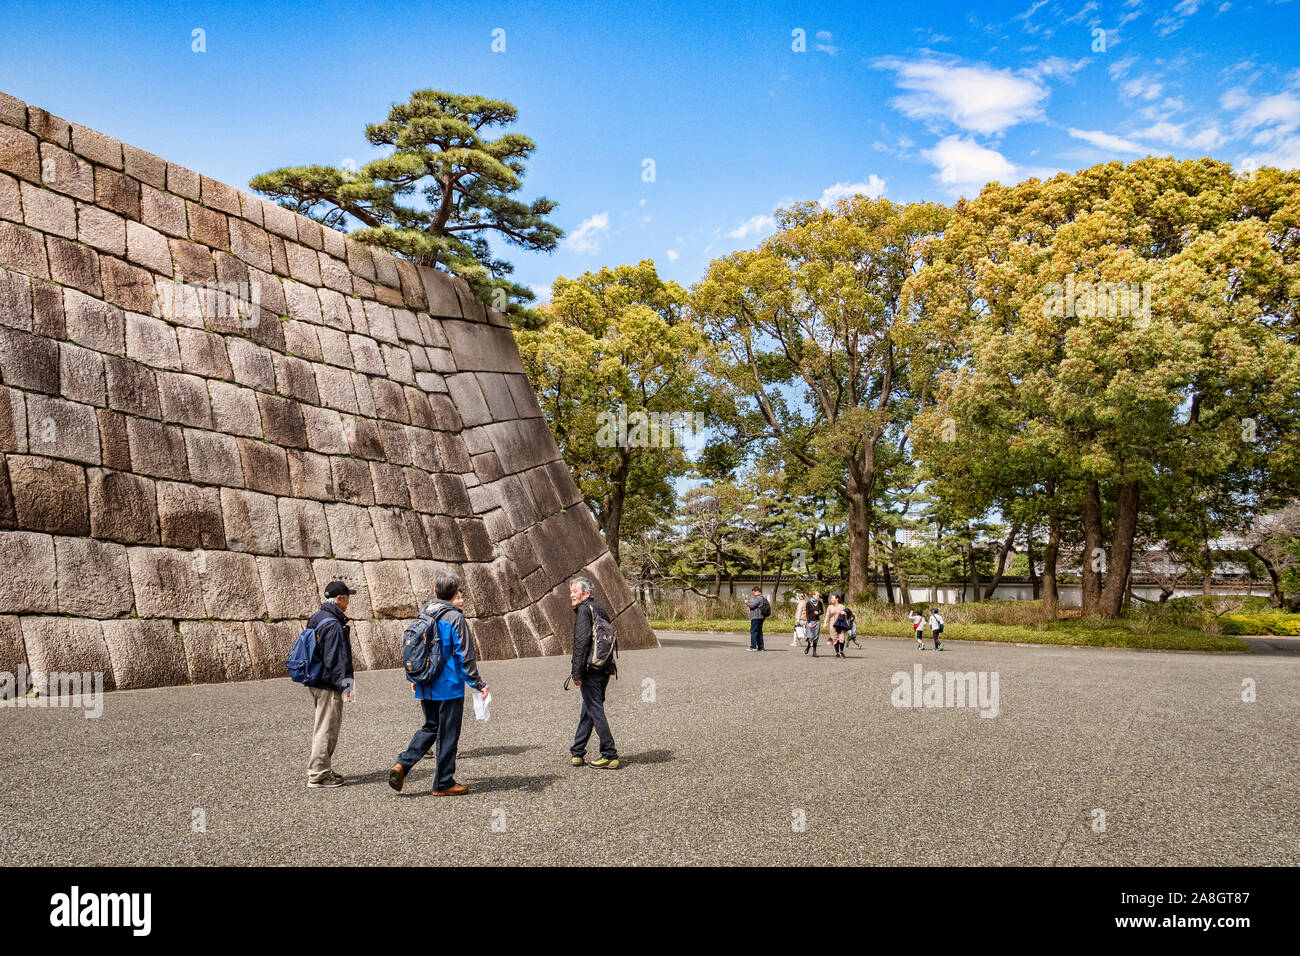 21 mars 2019 - Tokyo, Japon - les visiteurs à l'ancien site du principal donjon de Château d'Edo, qui fait maintenant partie de l'Imperial Palace. Banque D'Images